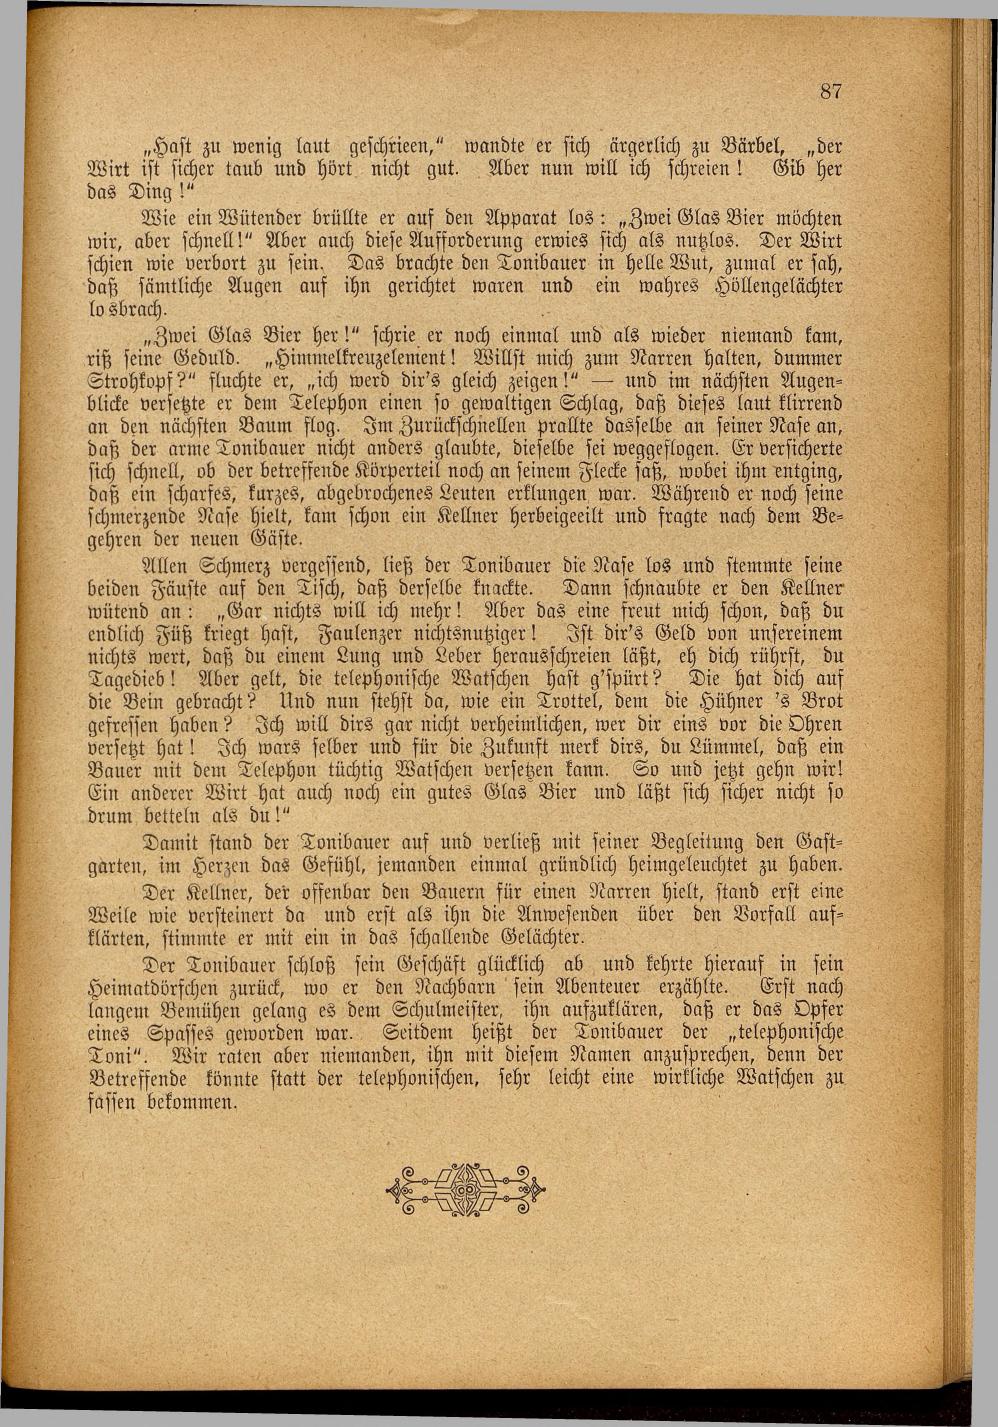 Illustrierter Braunauer-Kalender für das Jahr 1904 - Seite 91